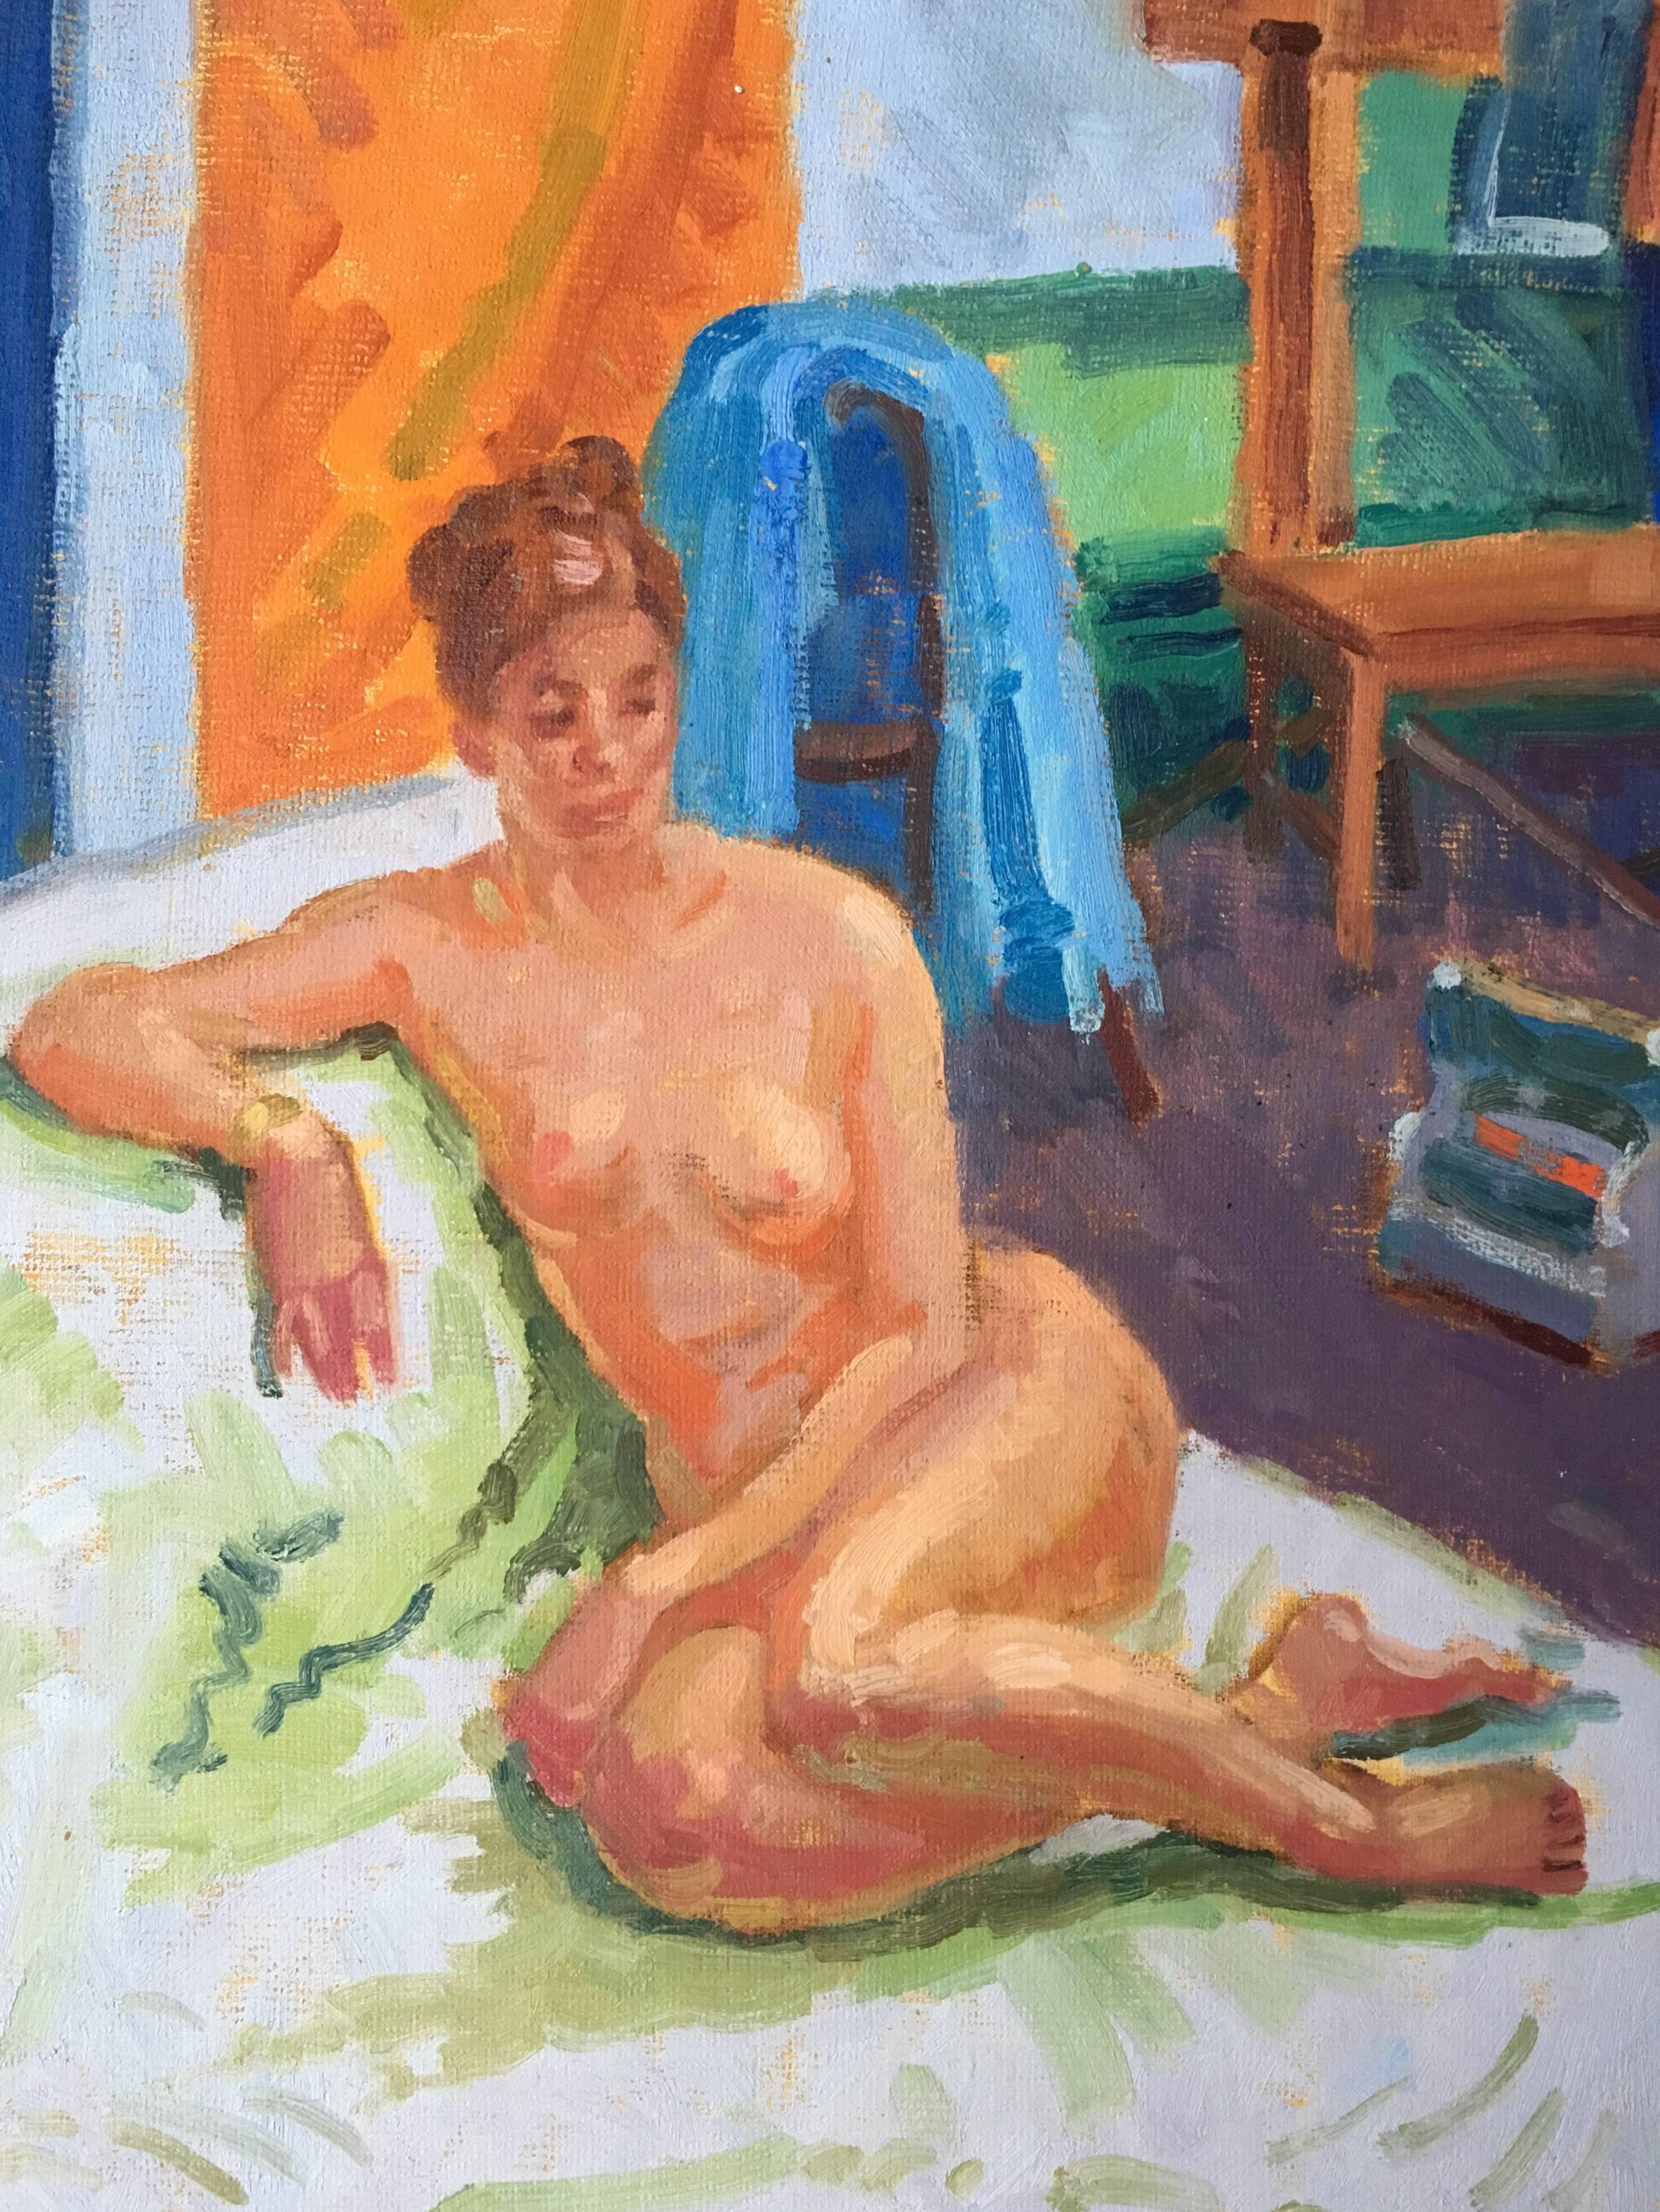 Modell der Künstlerin, nudefarbenes impressionistisches Ölgemälde  (Impressionismus), Painting, von J.B. Holmes